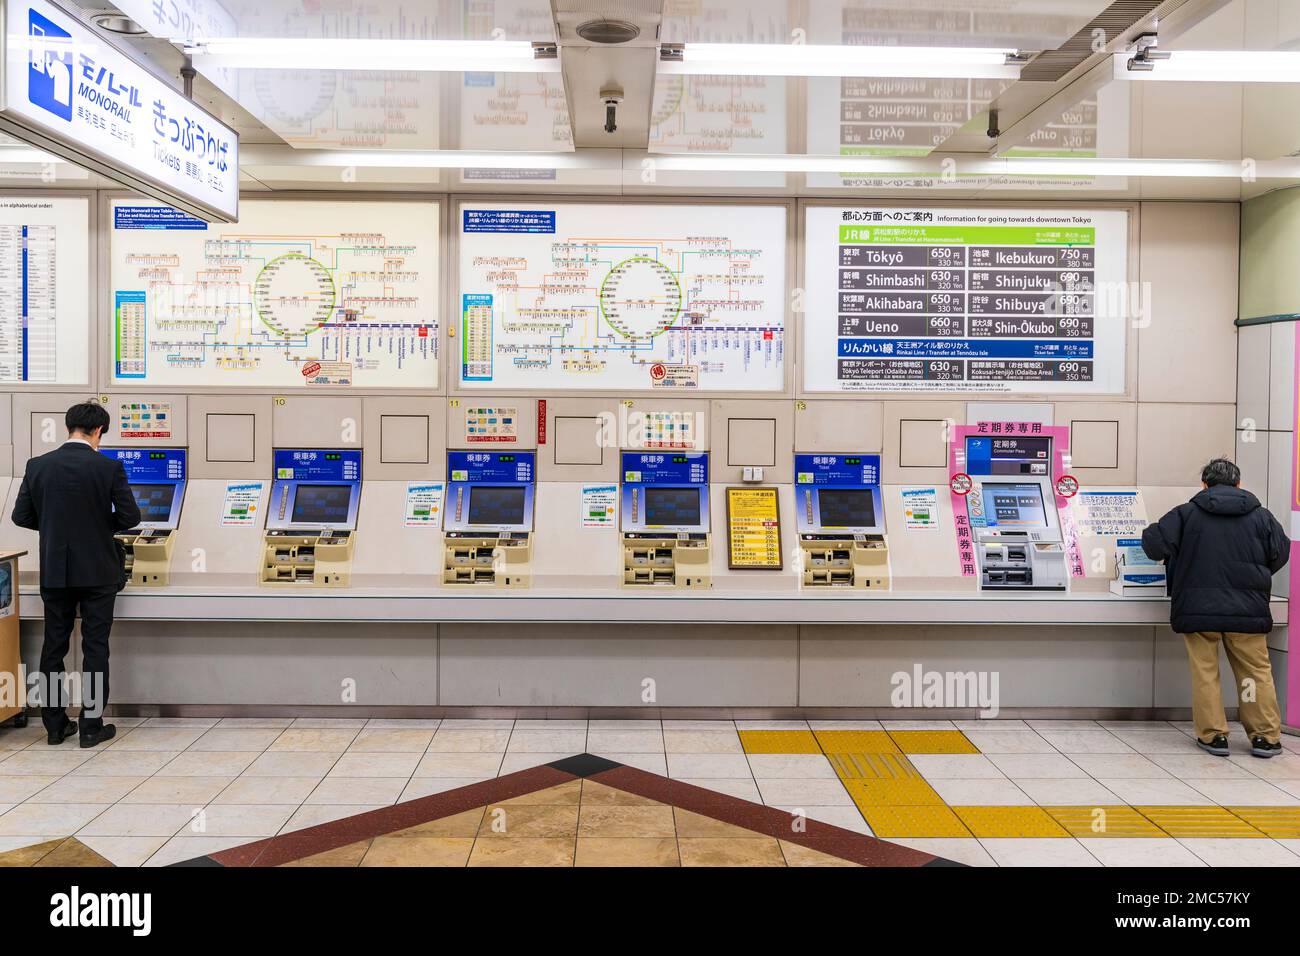 Tokio Haneda Airport. Interieur von Terminal 1. Reihe von Tokio Monorail Fahrkartenautomaten und zwei Menschen, die sie verwenden. Über Maschinen, Karten und Preise. Stockfoto